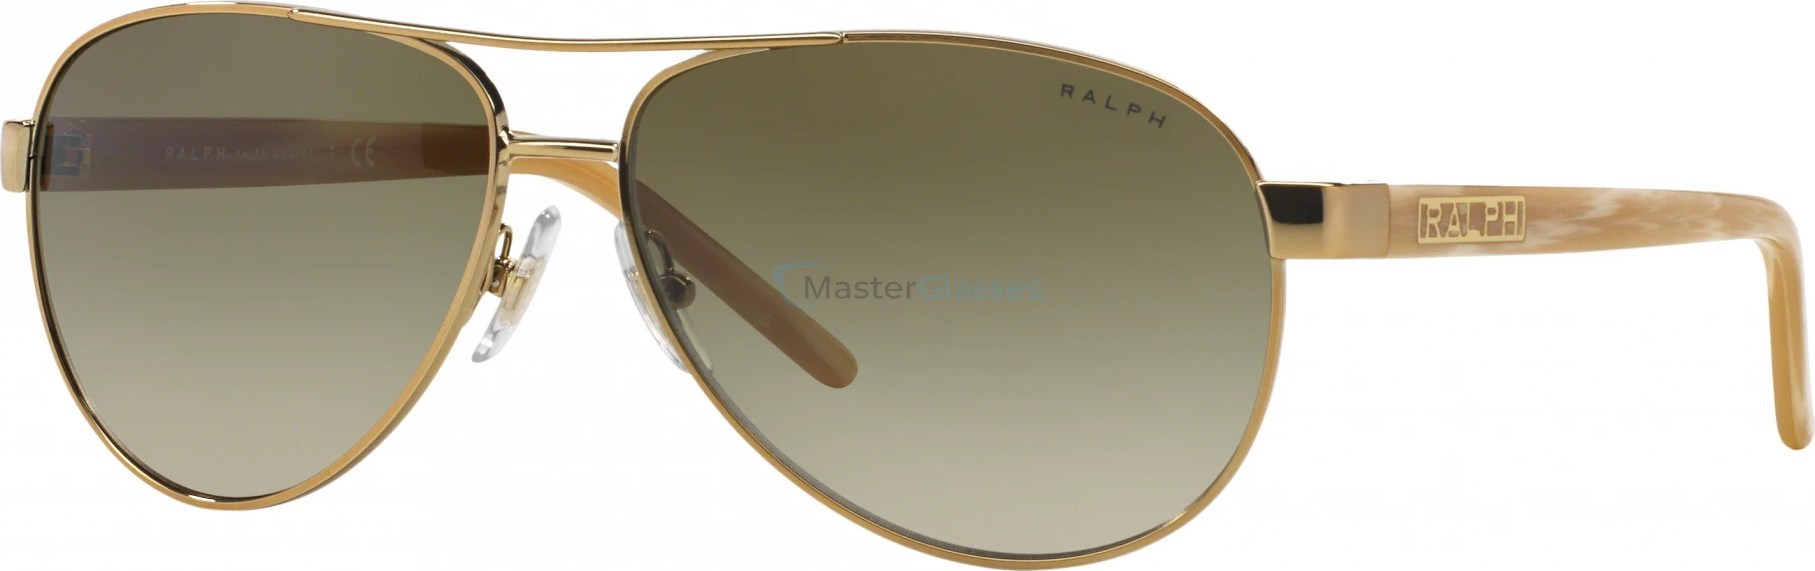   Ralph RA4004 101/13 Gold/cream